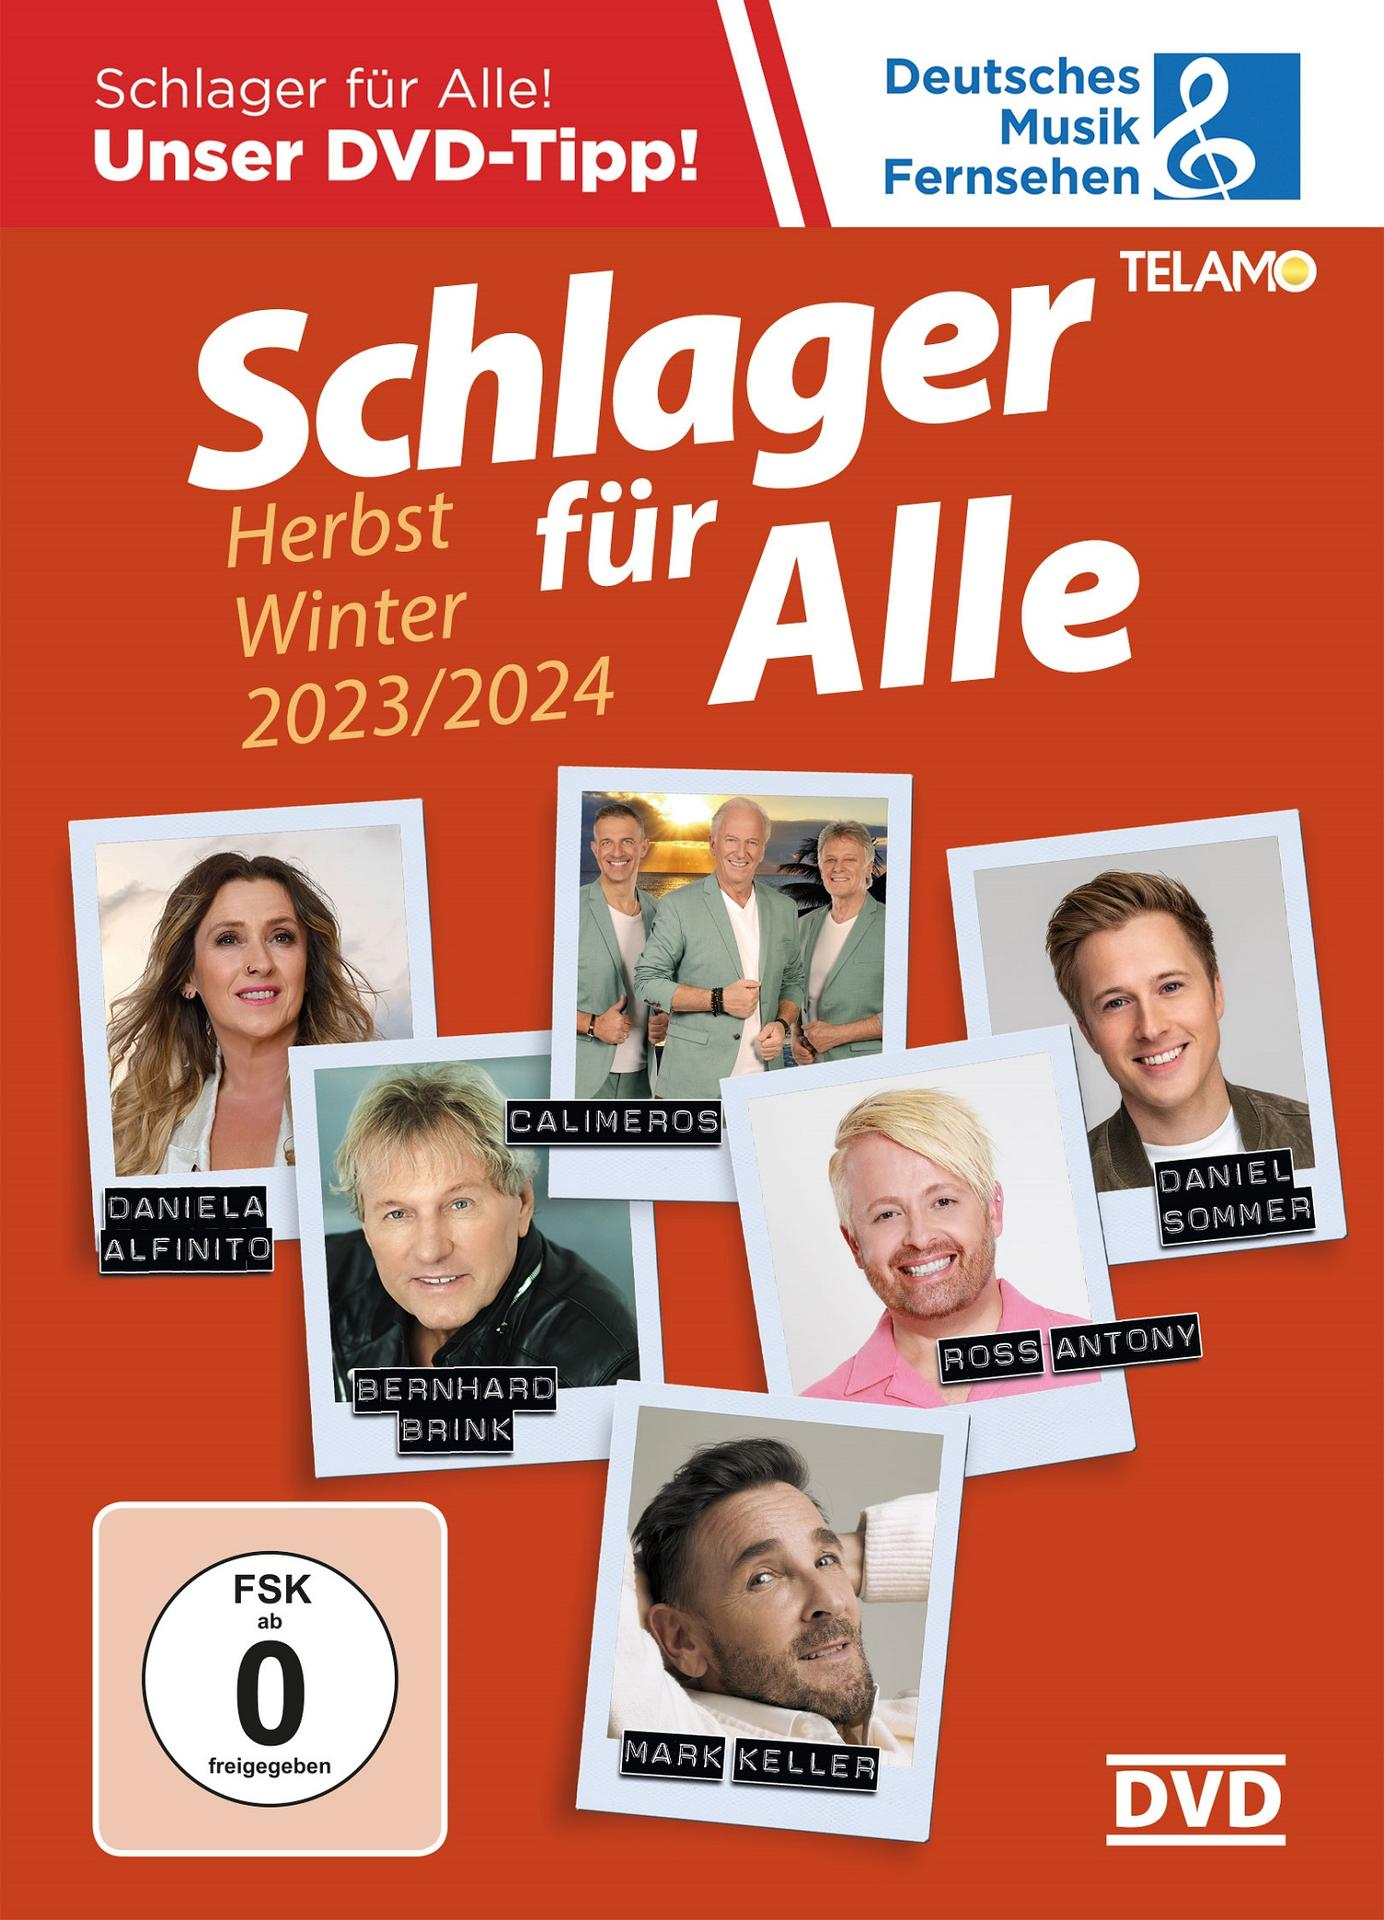 VARIOUS - Schlager für Alle:Herbst/Winter - 2023/2024 (DVD)